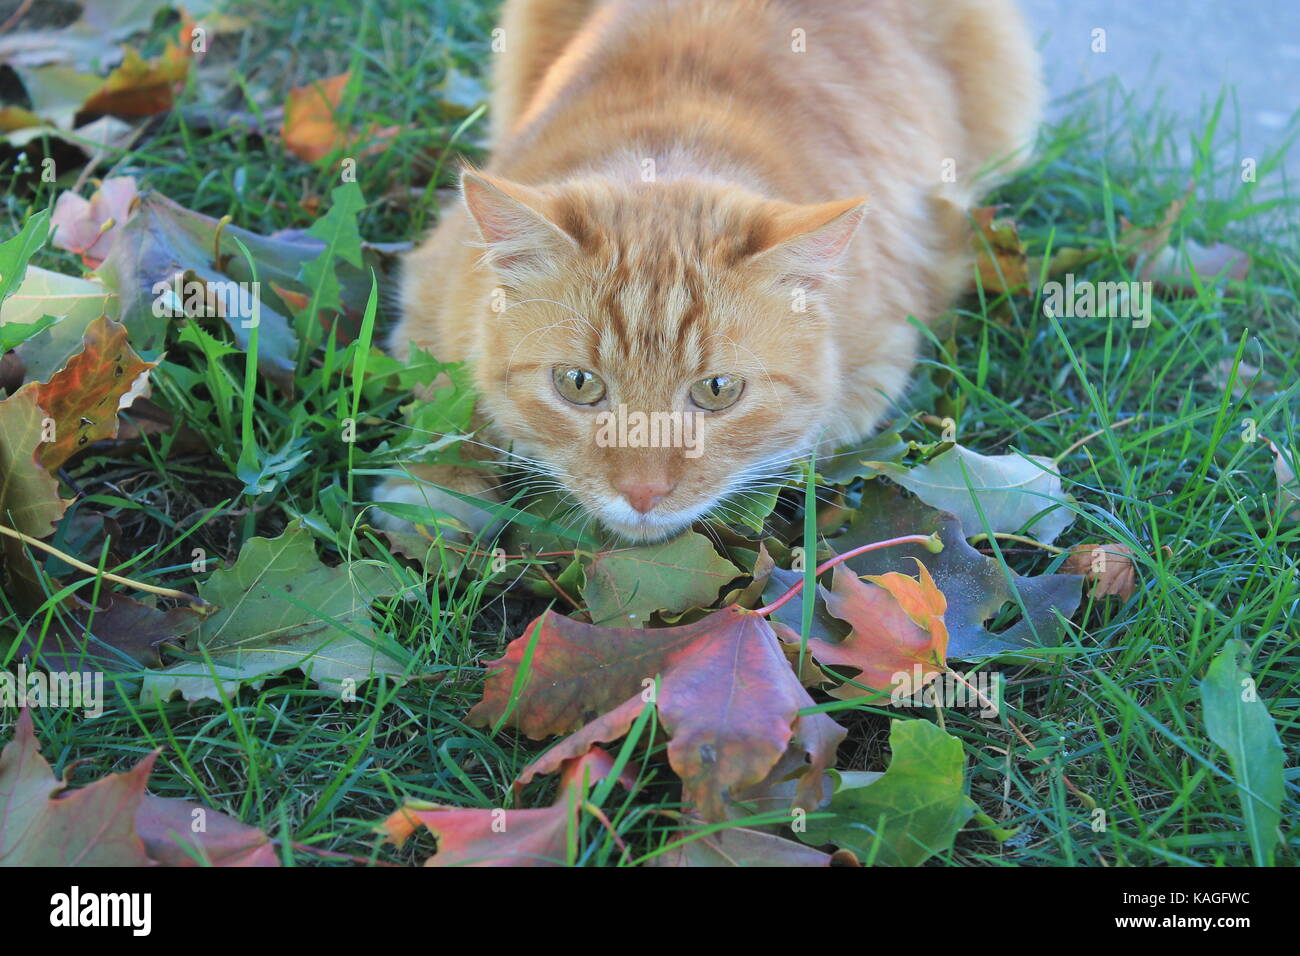 Bella di colore arancione brillante fluffy cat giocare su erba verde in acero rosso fogliame nella calda giornata di sole Foto Stock